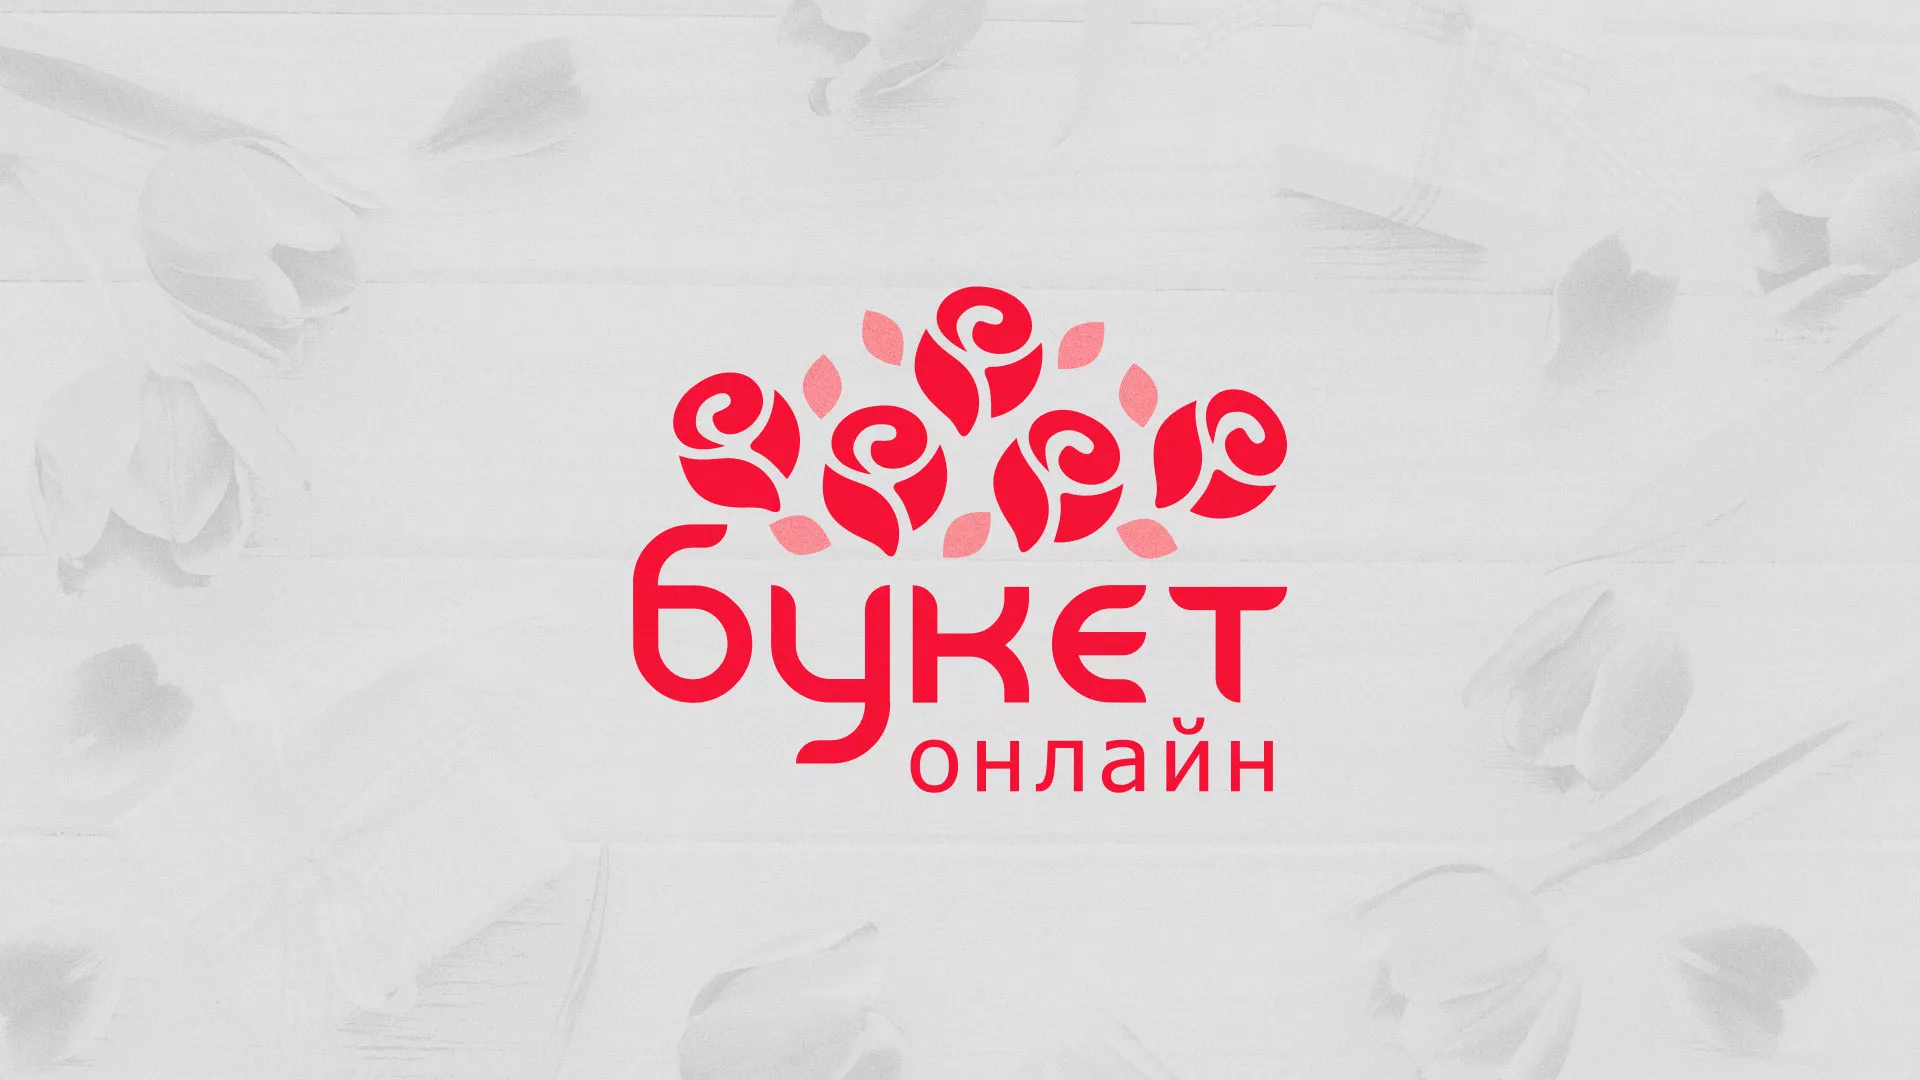 Создание интернет-магазина «Букет-онлайн» по цветам в Котельниково